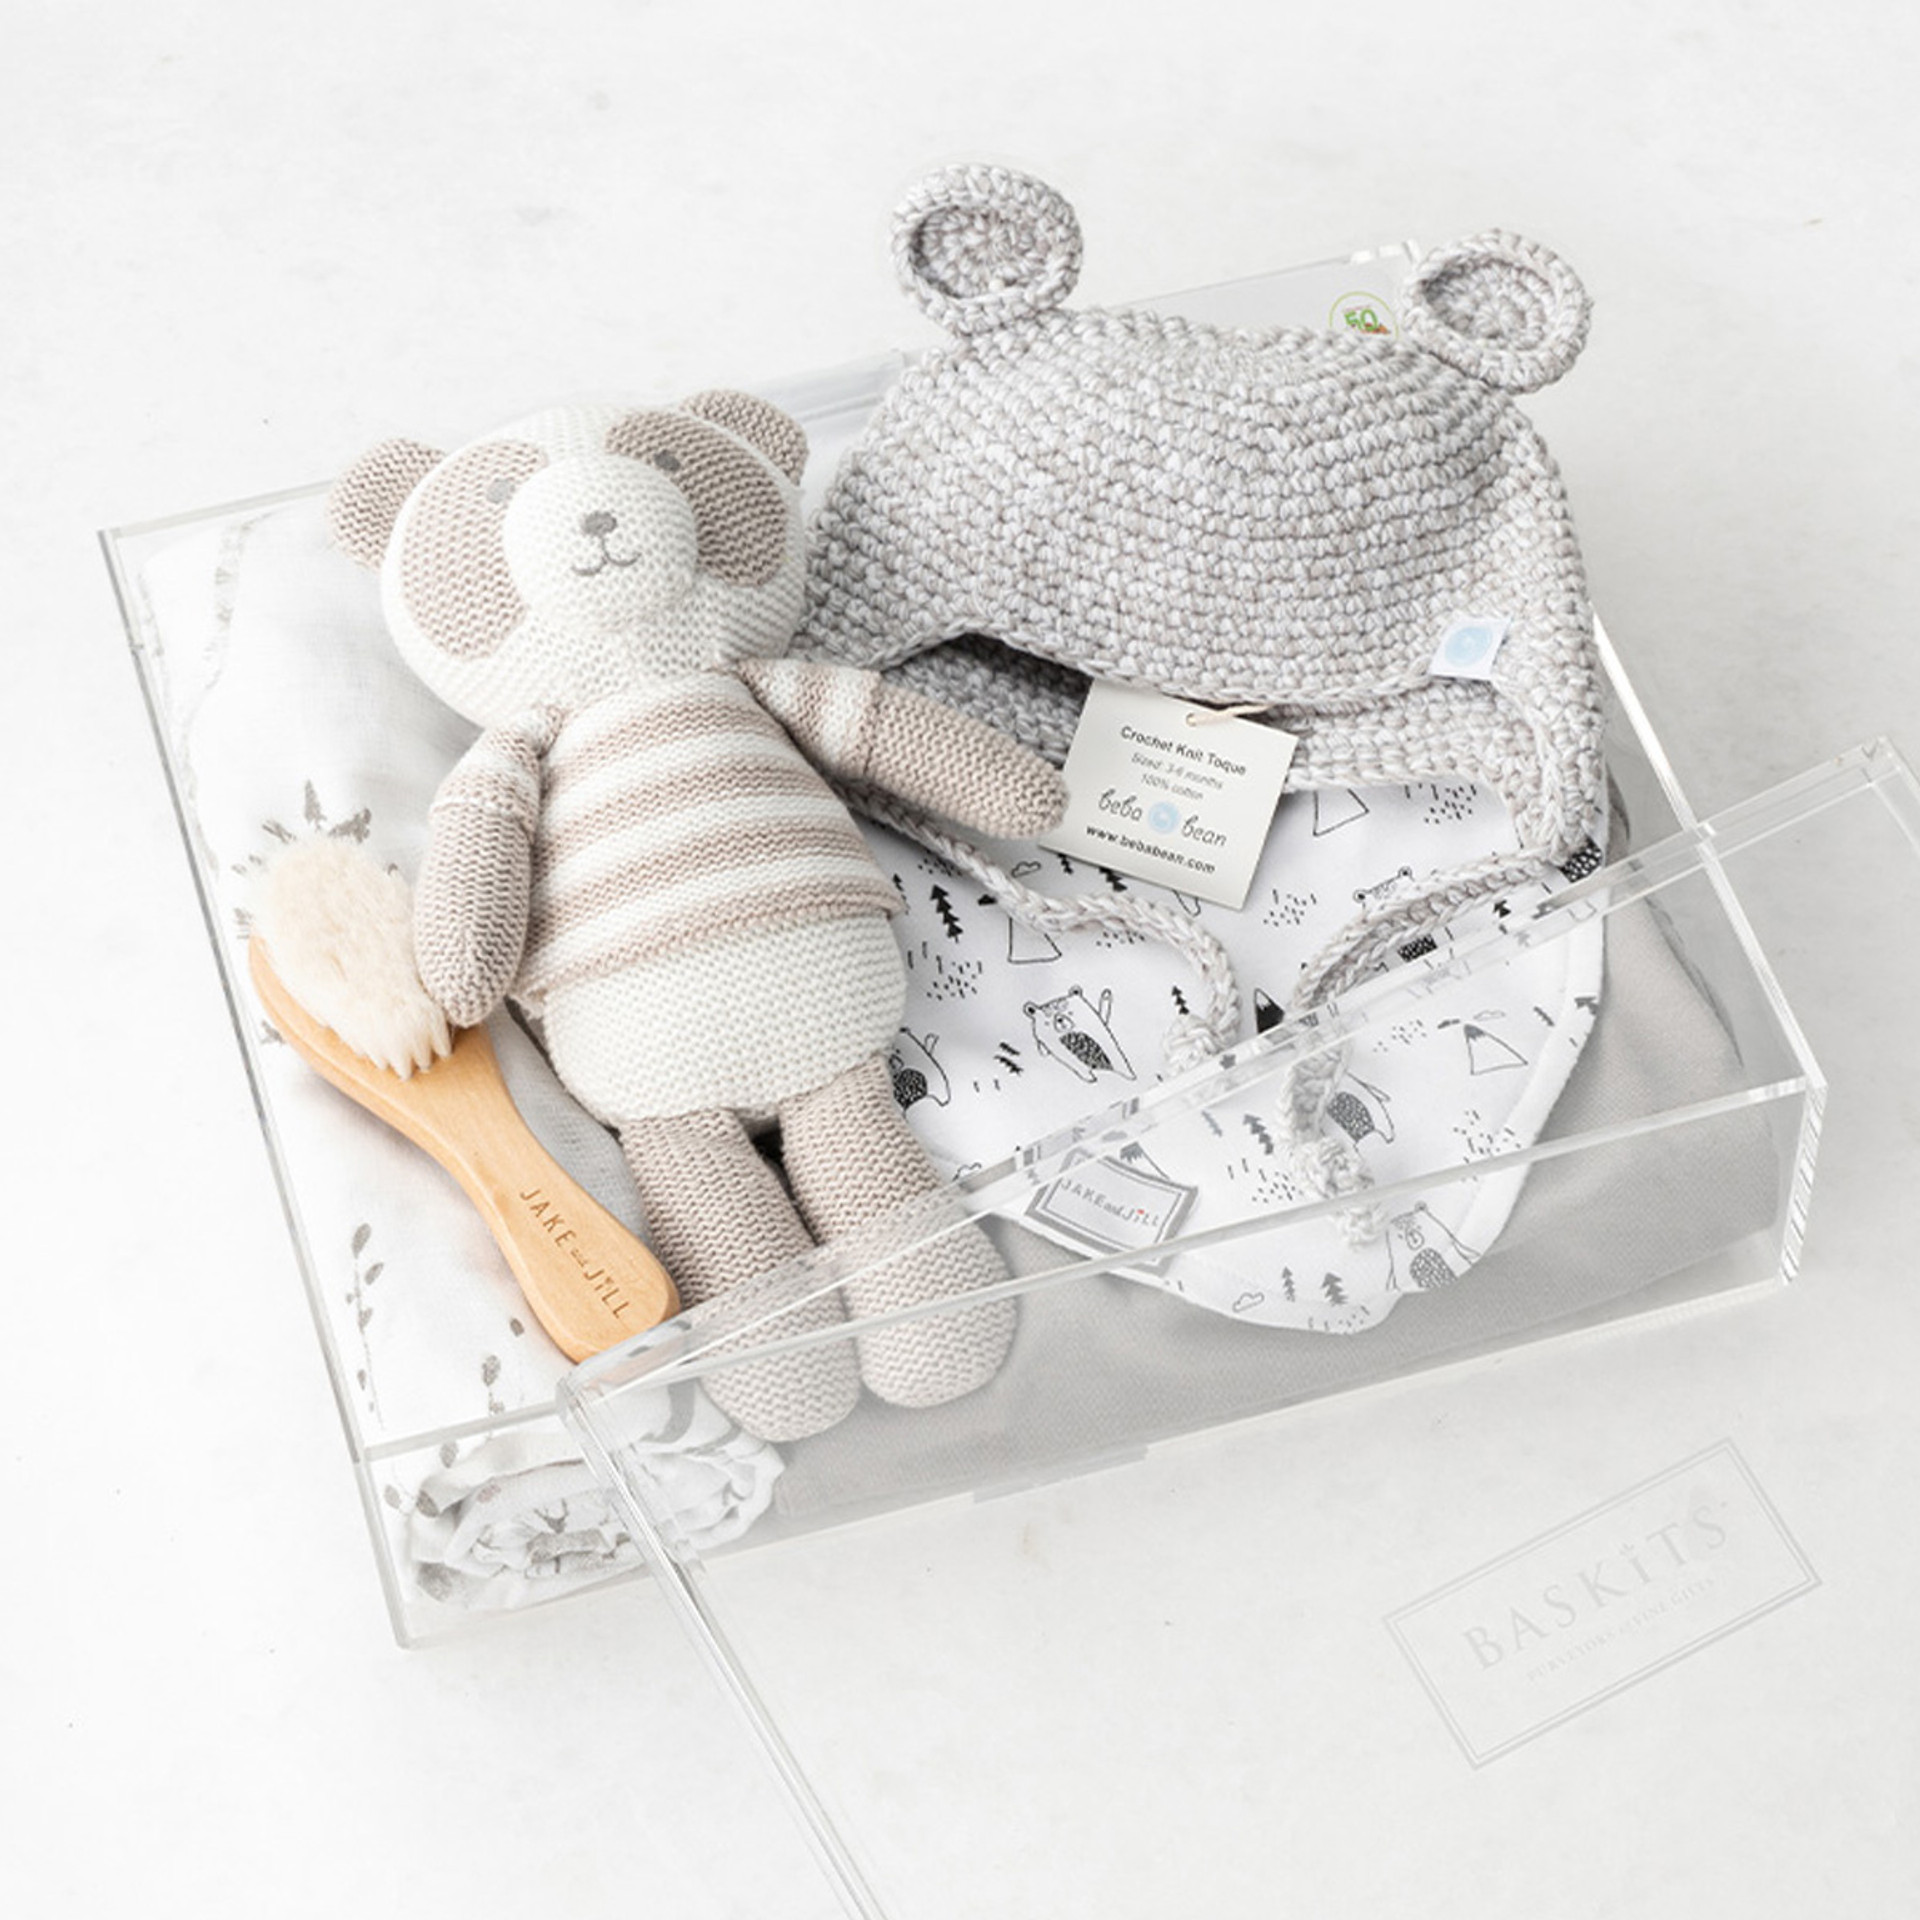 Baby bear gift set